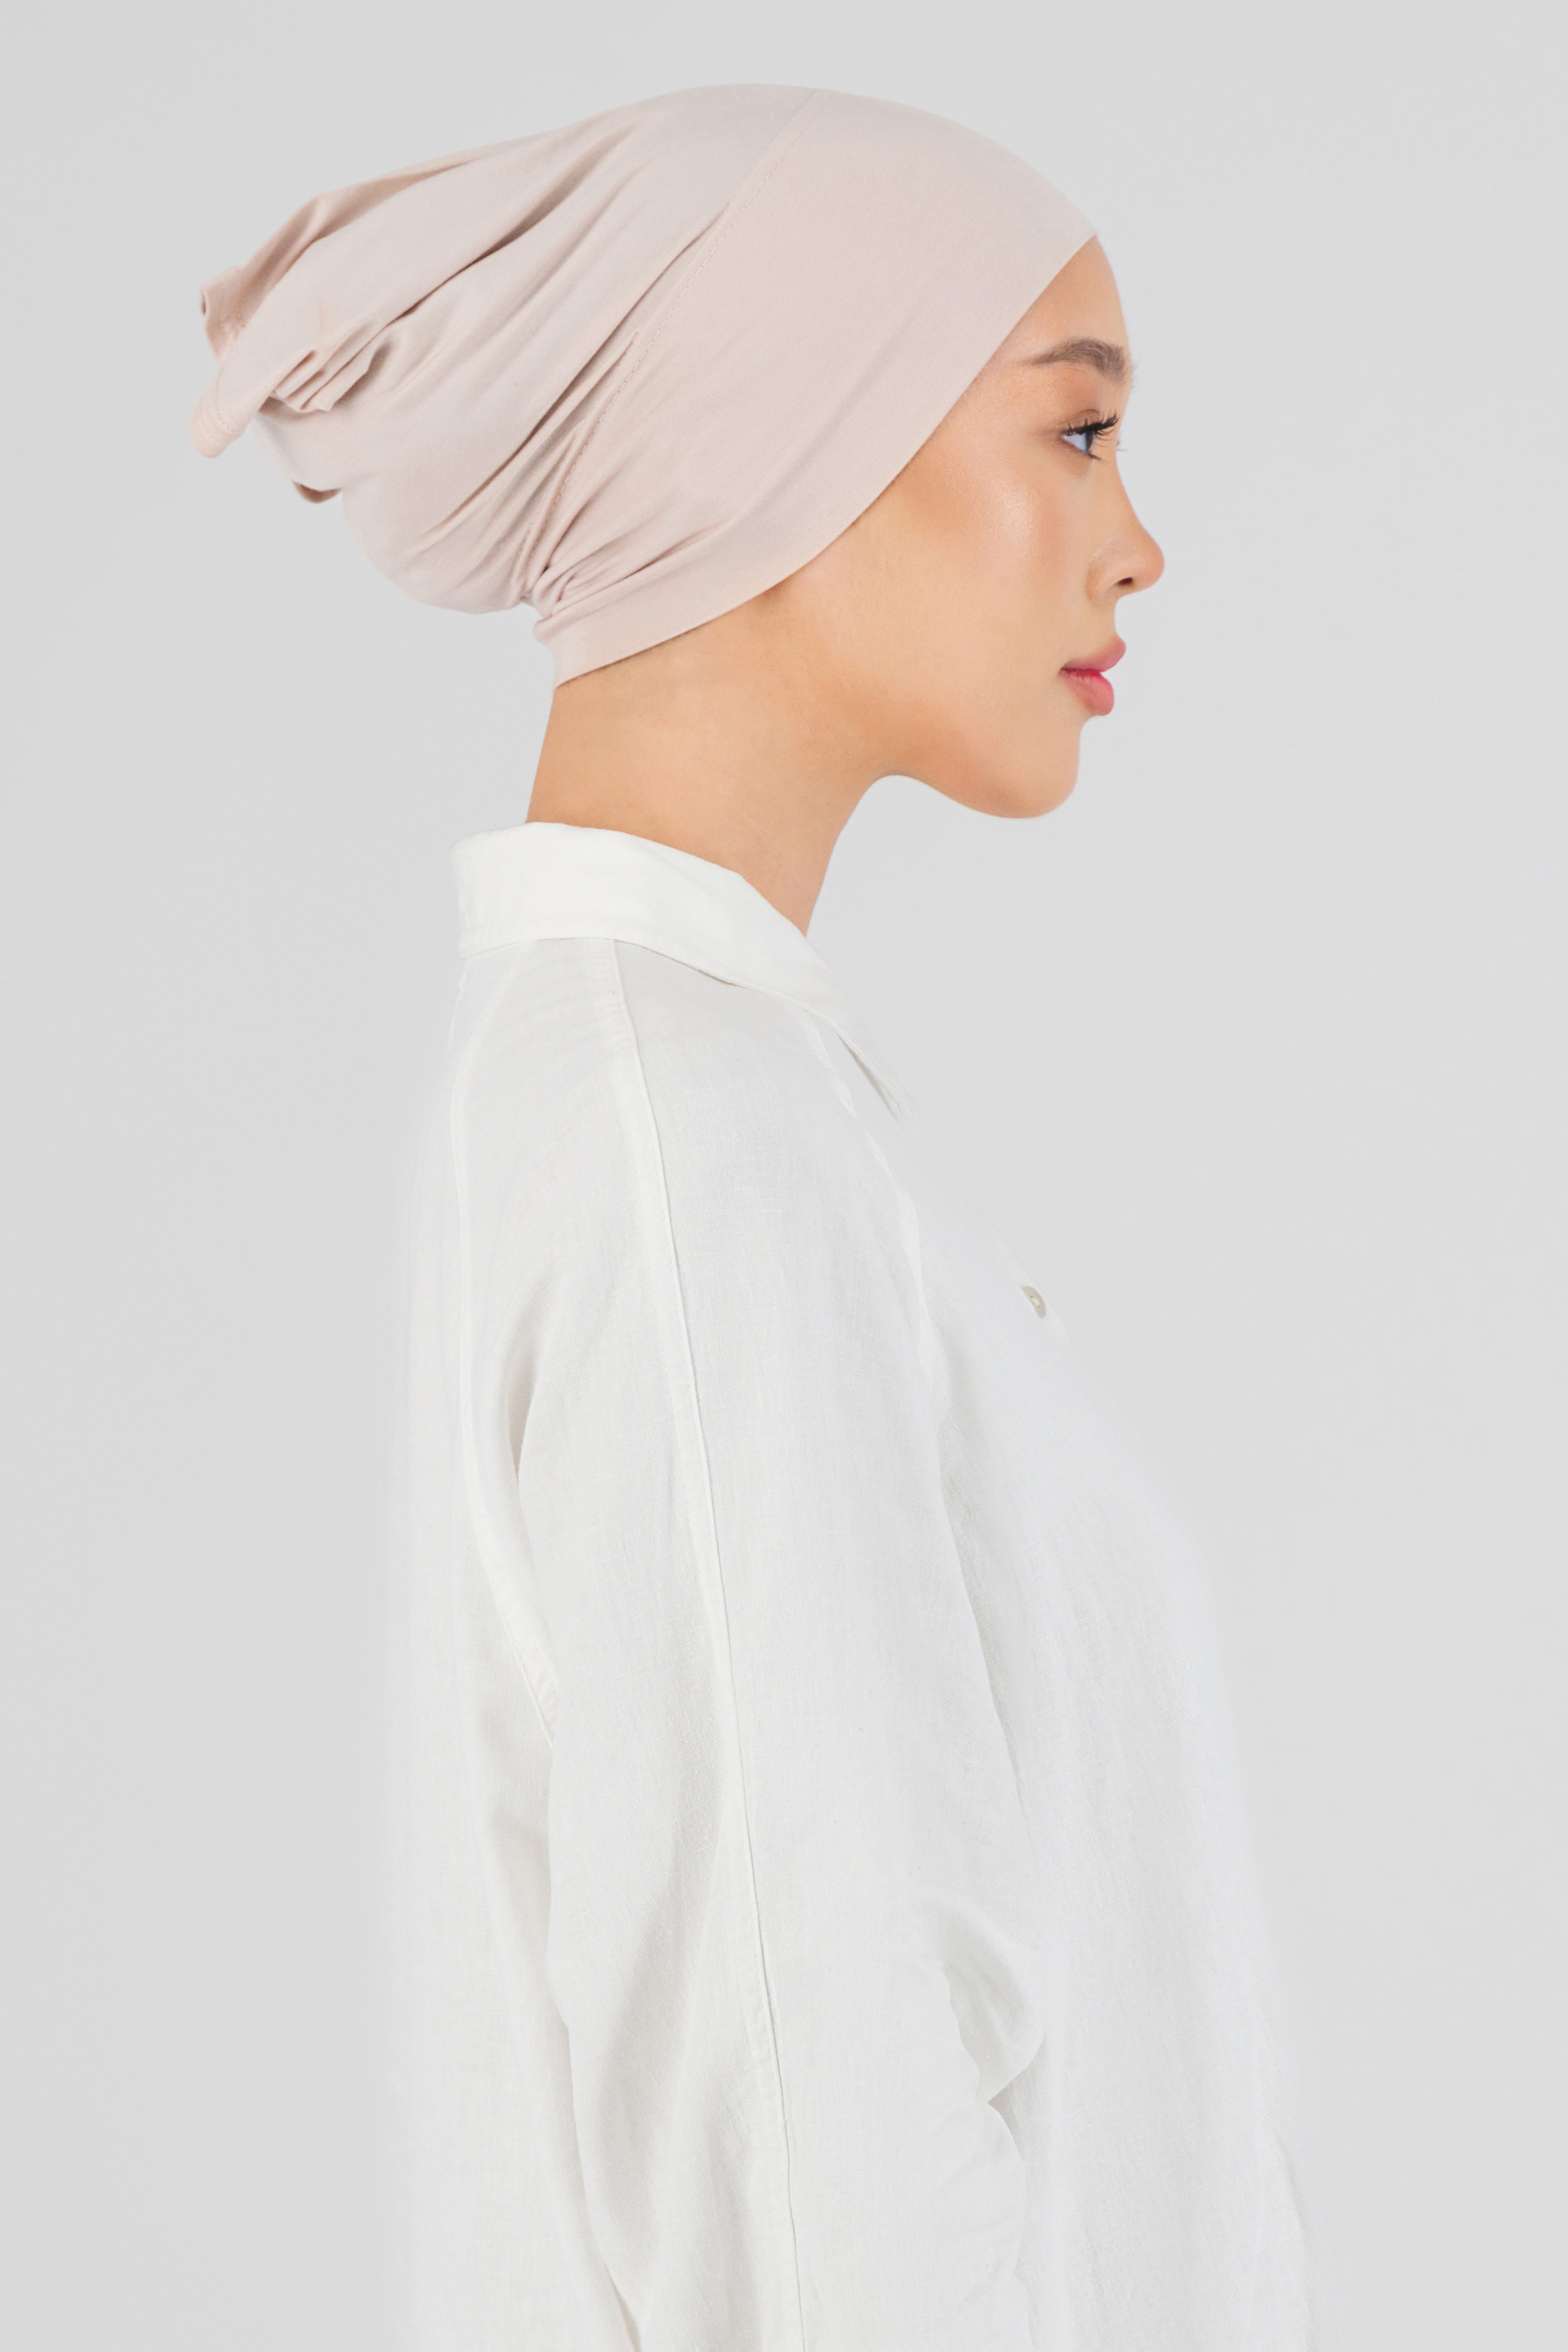 US - Matching Chiffon Hijab Set - Lace